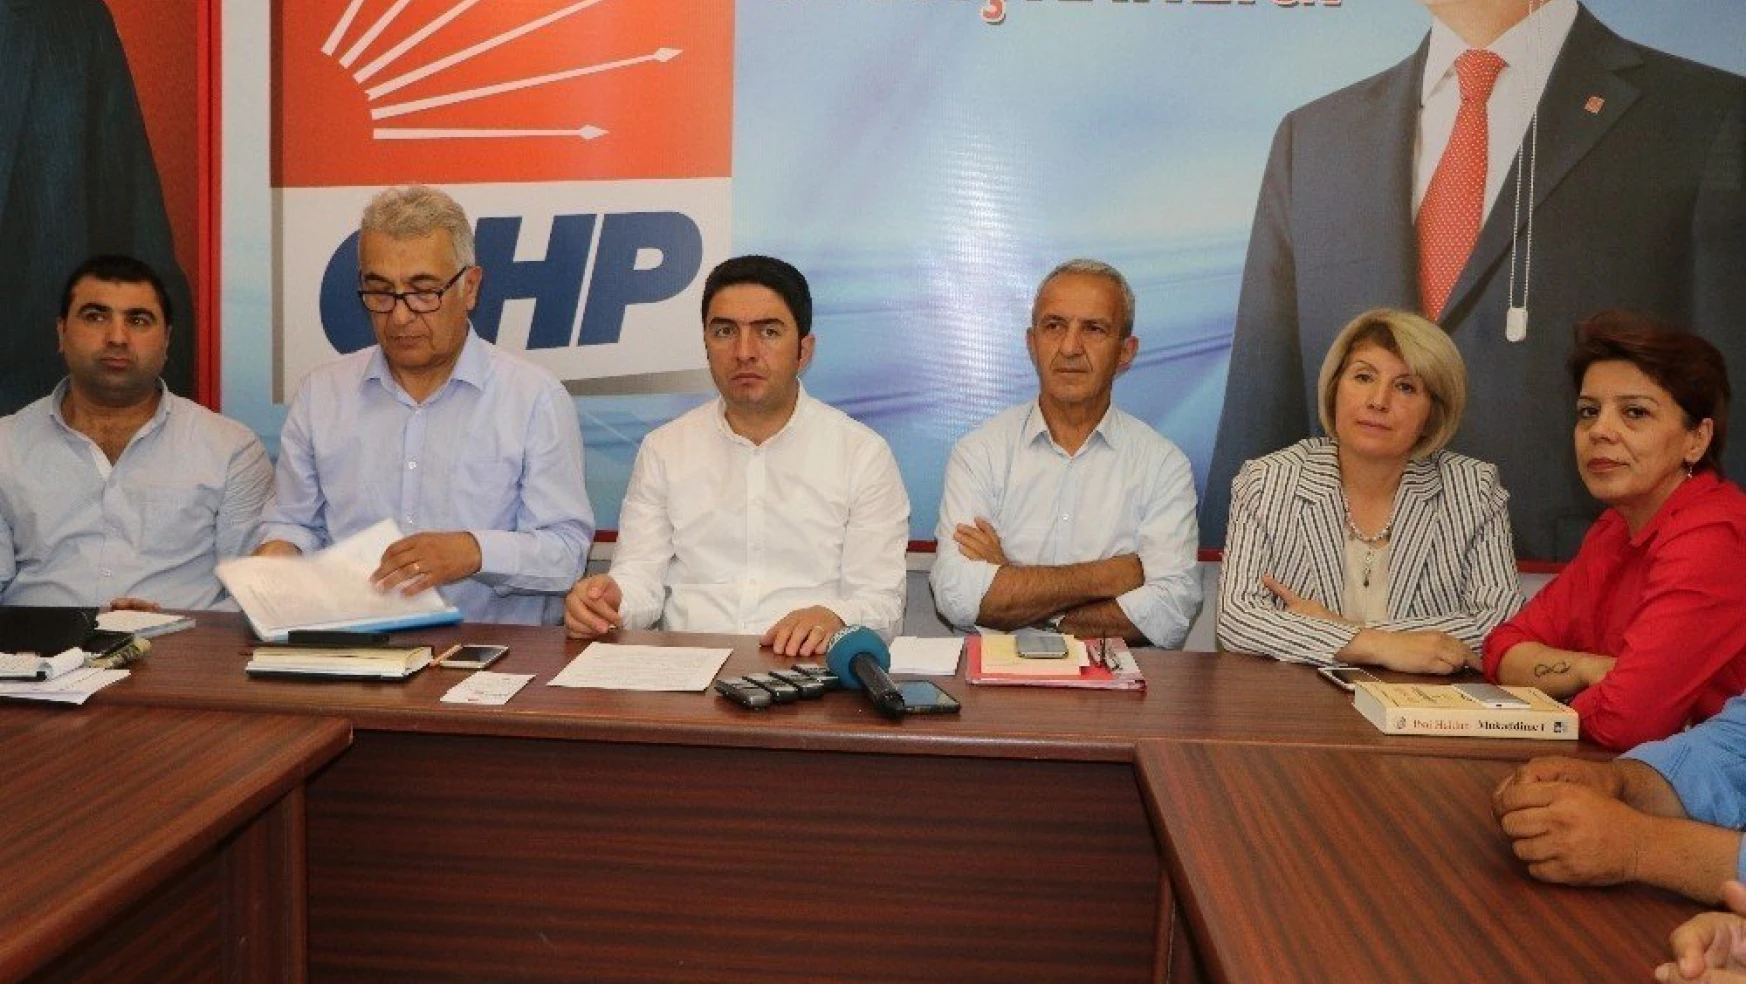 CHP Malatya İl Başkanı Enver Kiraz:
